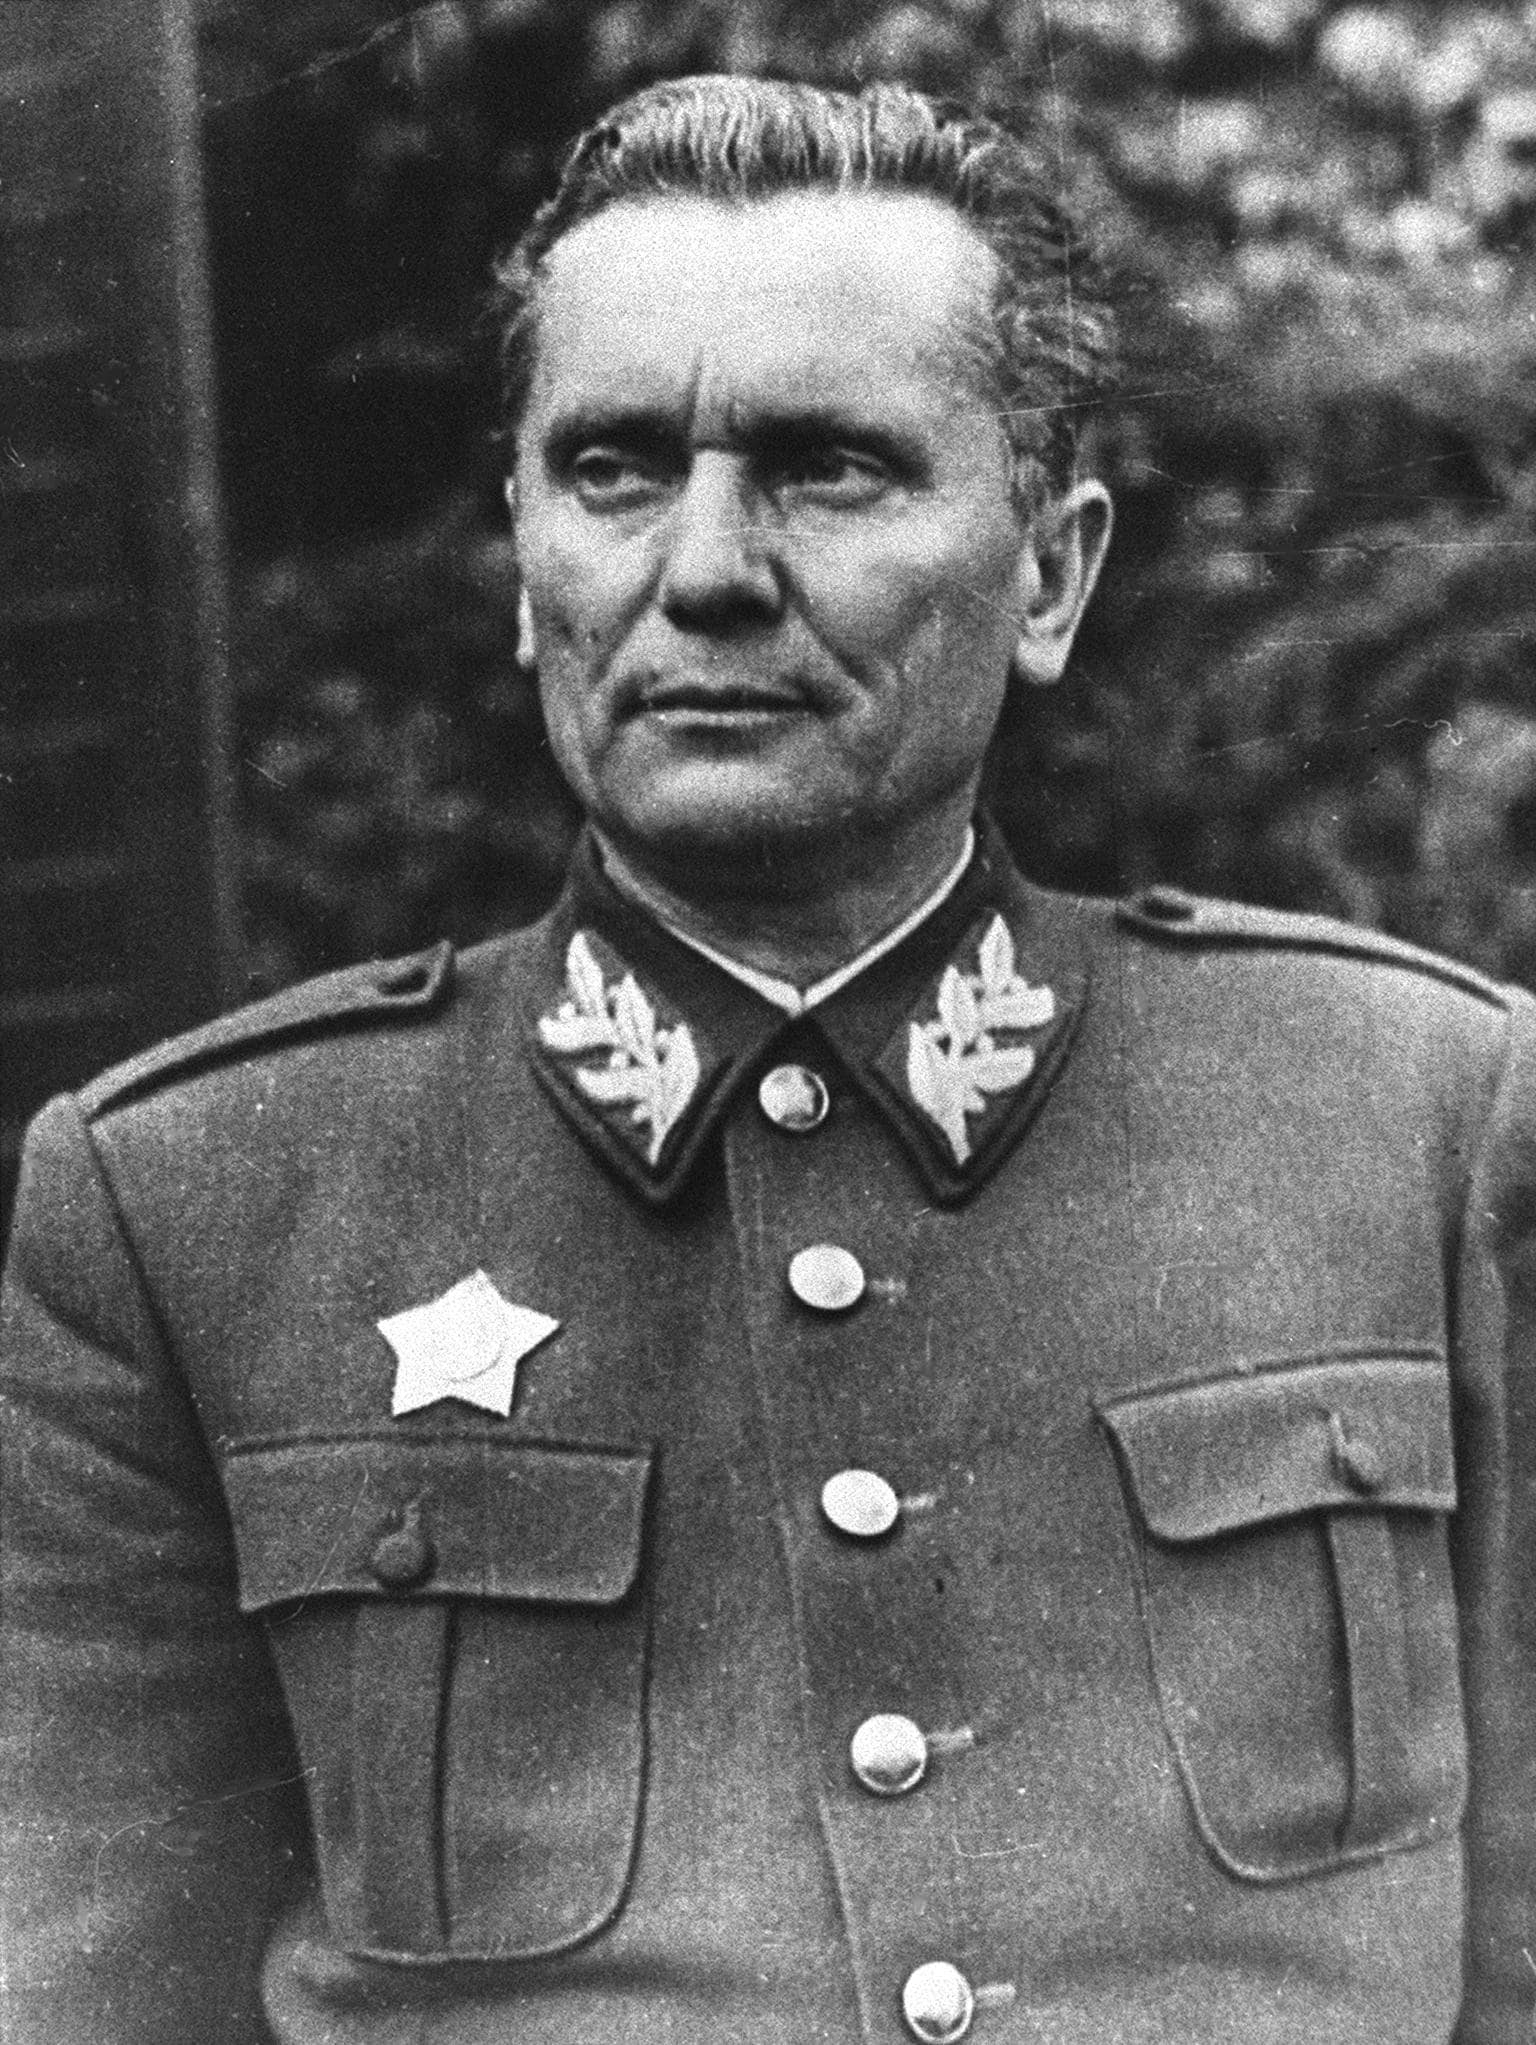 Tito, pesudonimo di Josip Broz, uomo politico e capo militare iugoslavo. Guida la lotta di liberazione nazionale dagli invasori nazisti, contrastando i fascisti croati e italiani